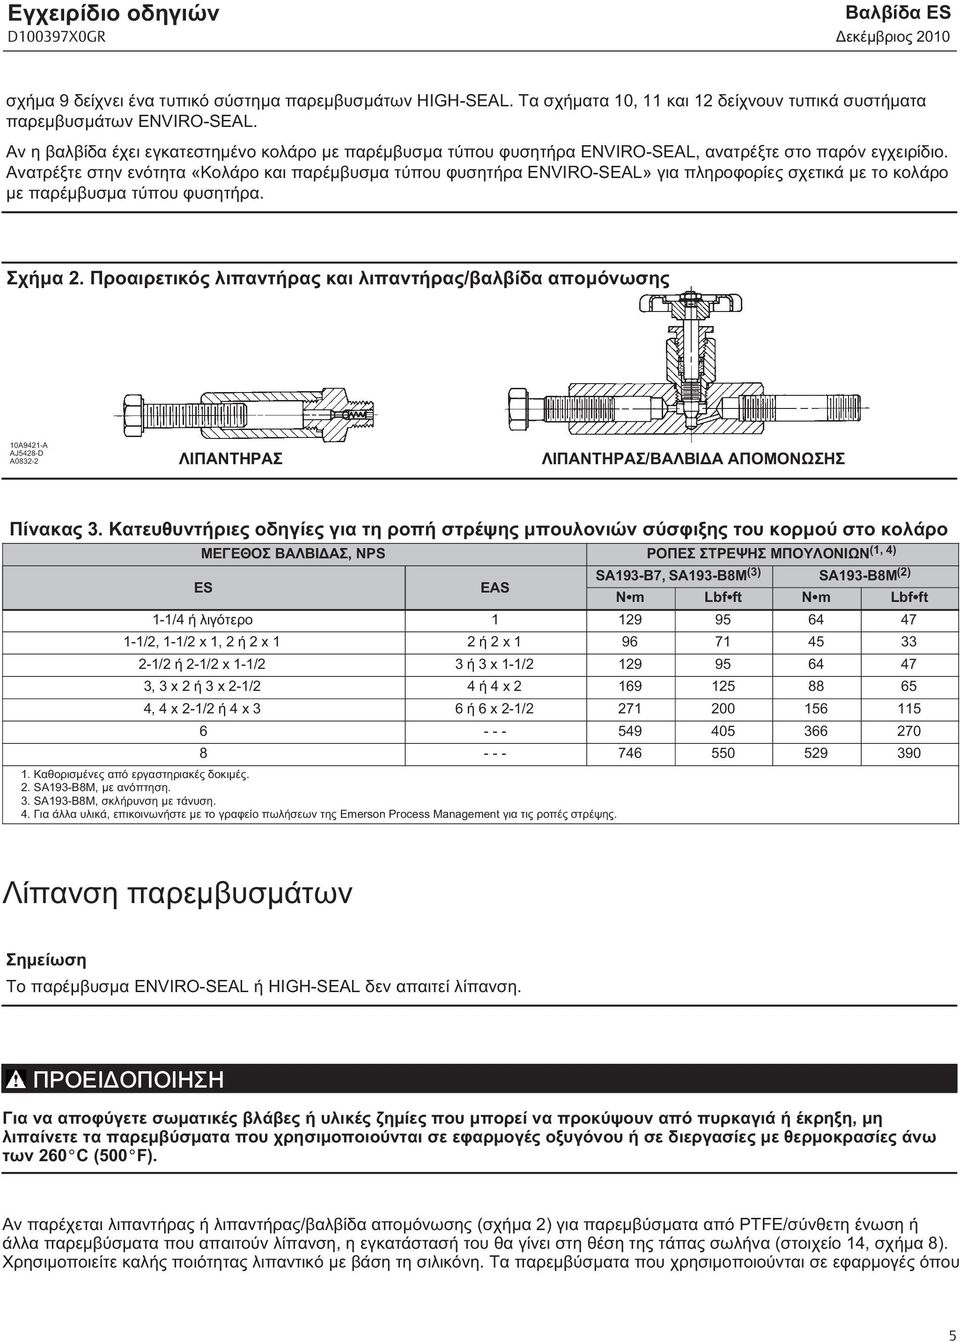 Ανατρέξτε στην ενότητα «Κολάρο και παρέμβυσμα τύπου φυσητήρα ENVIRO-SEAL» για πληροφορίες σχετικά με το κολάρο με παρέμβυσμα τύπου φυσητήρα. Σχήμα 2.